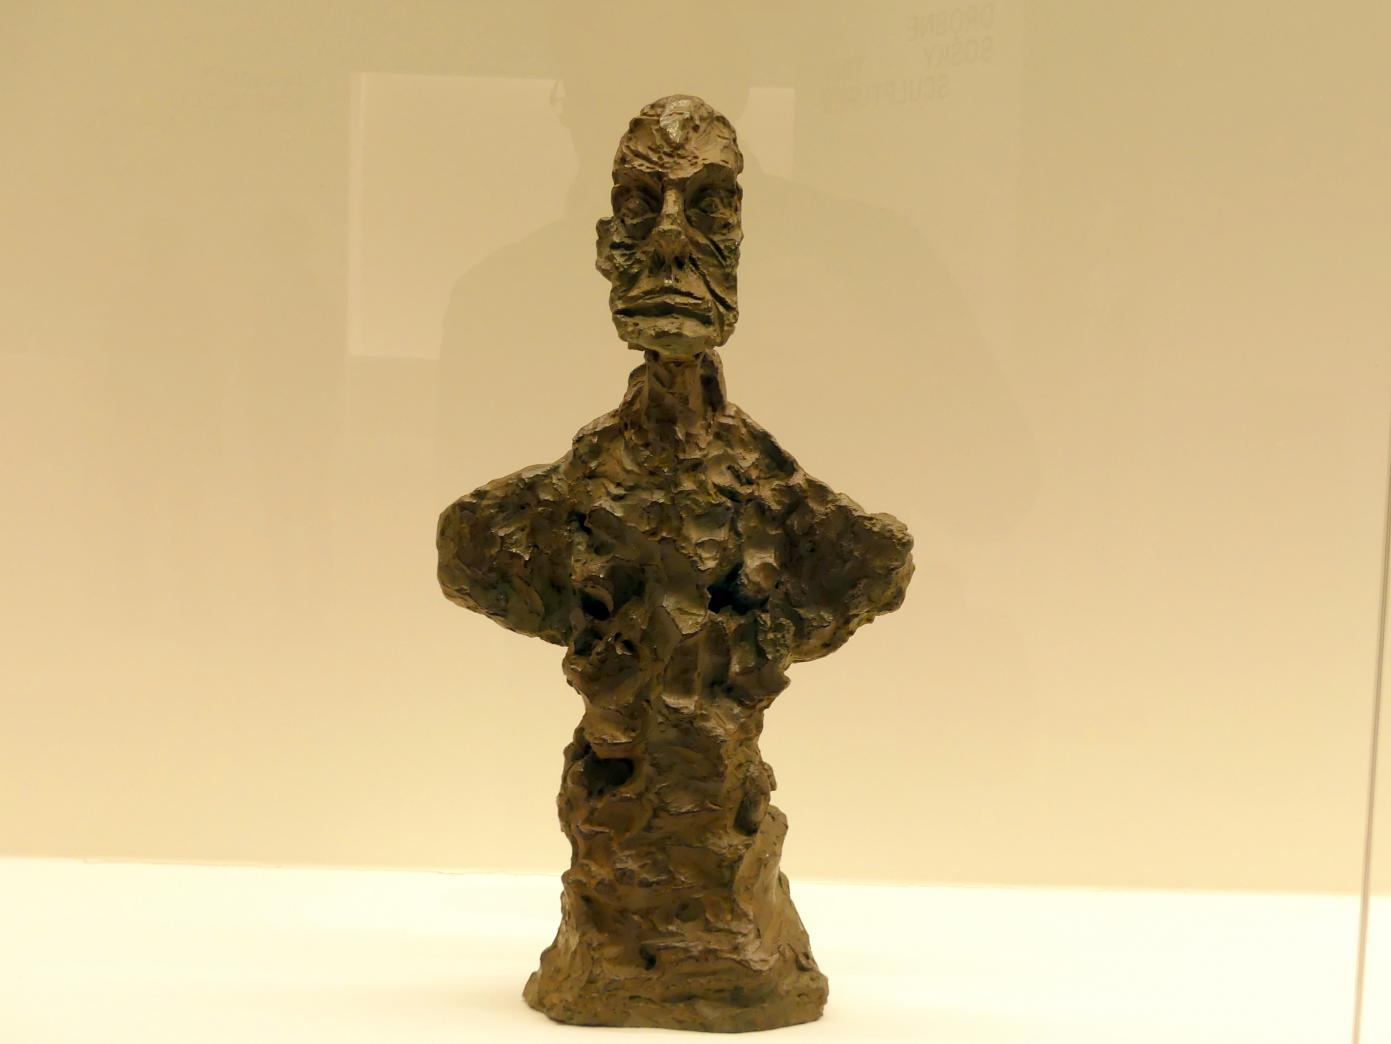 Alberto Giacometti (1914–1965), Büste eines Mannes ("New York II"), Prag, Nationalgalerie im Messepalast, Ausstellung "Alberto Giacometti" vom 18.07.-01.12.2019, Kleine Skulpturen, 1965